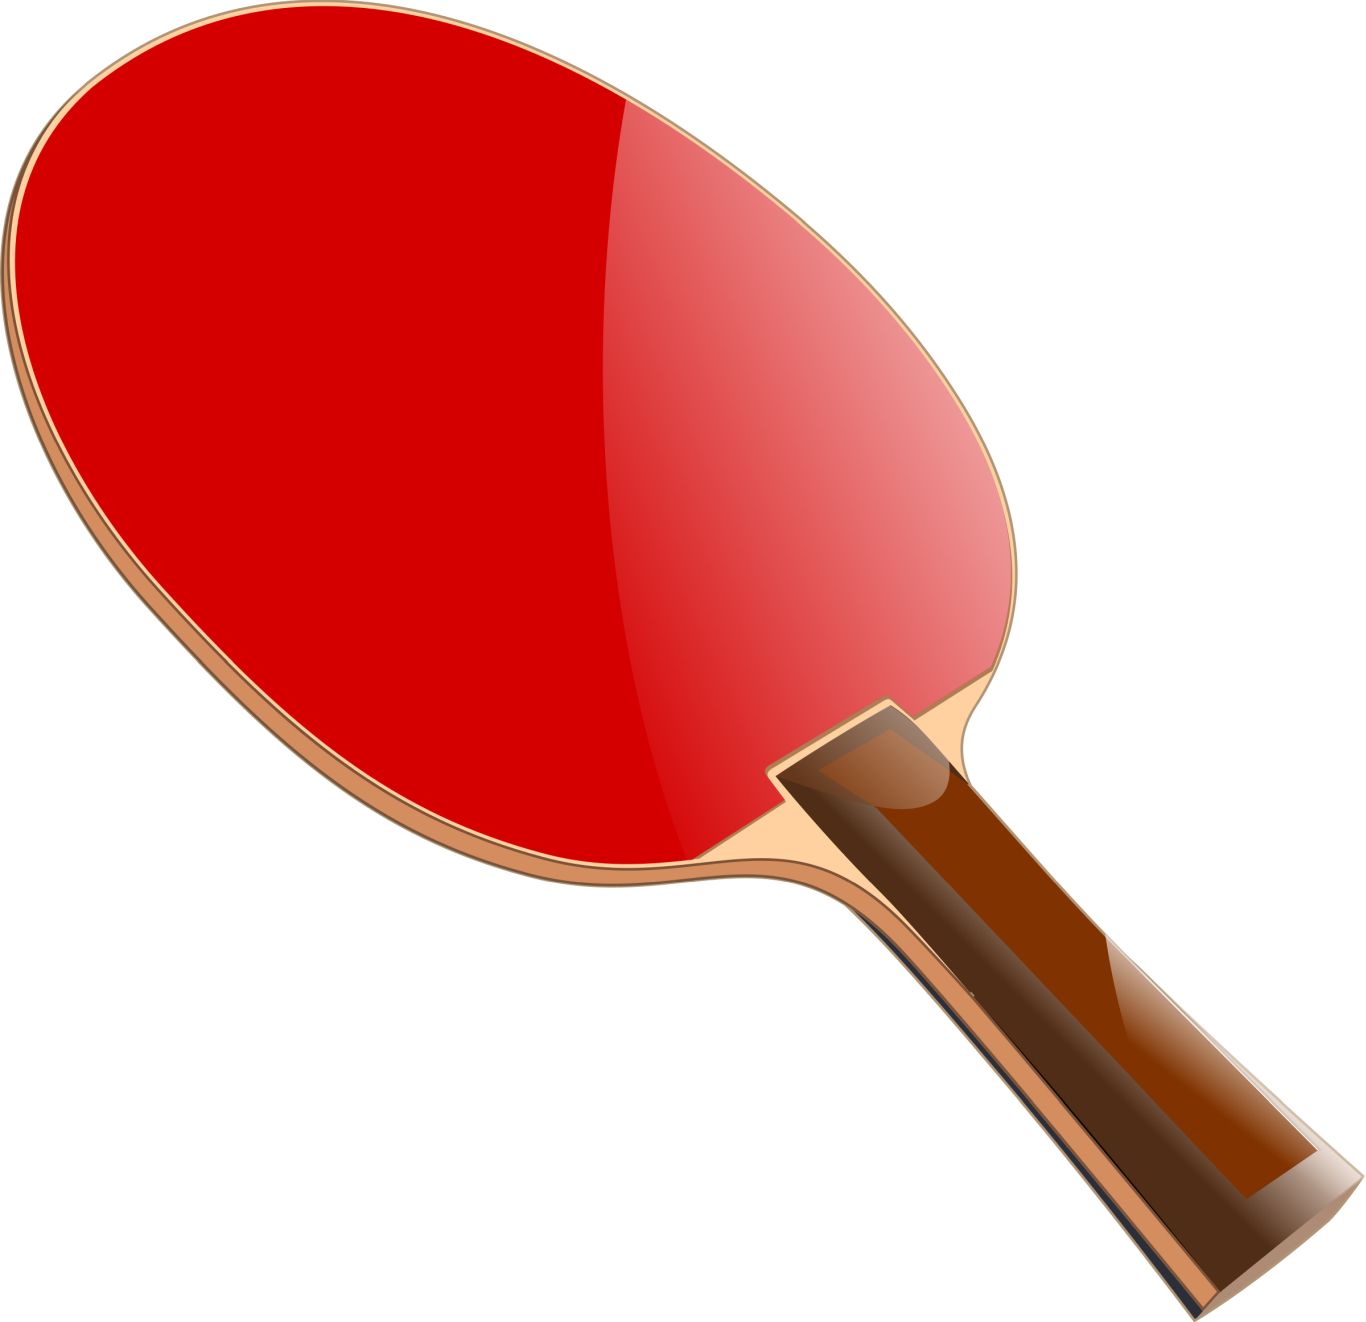 Ping Pong racket PNG image    图片编号:10360